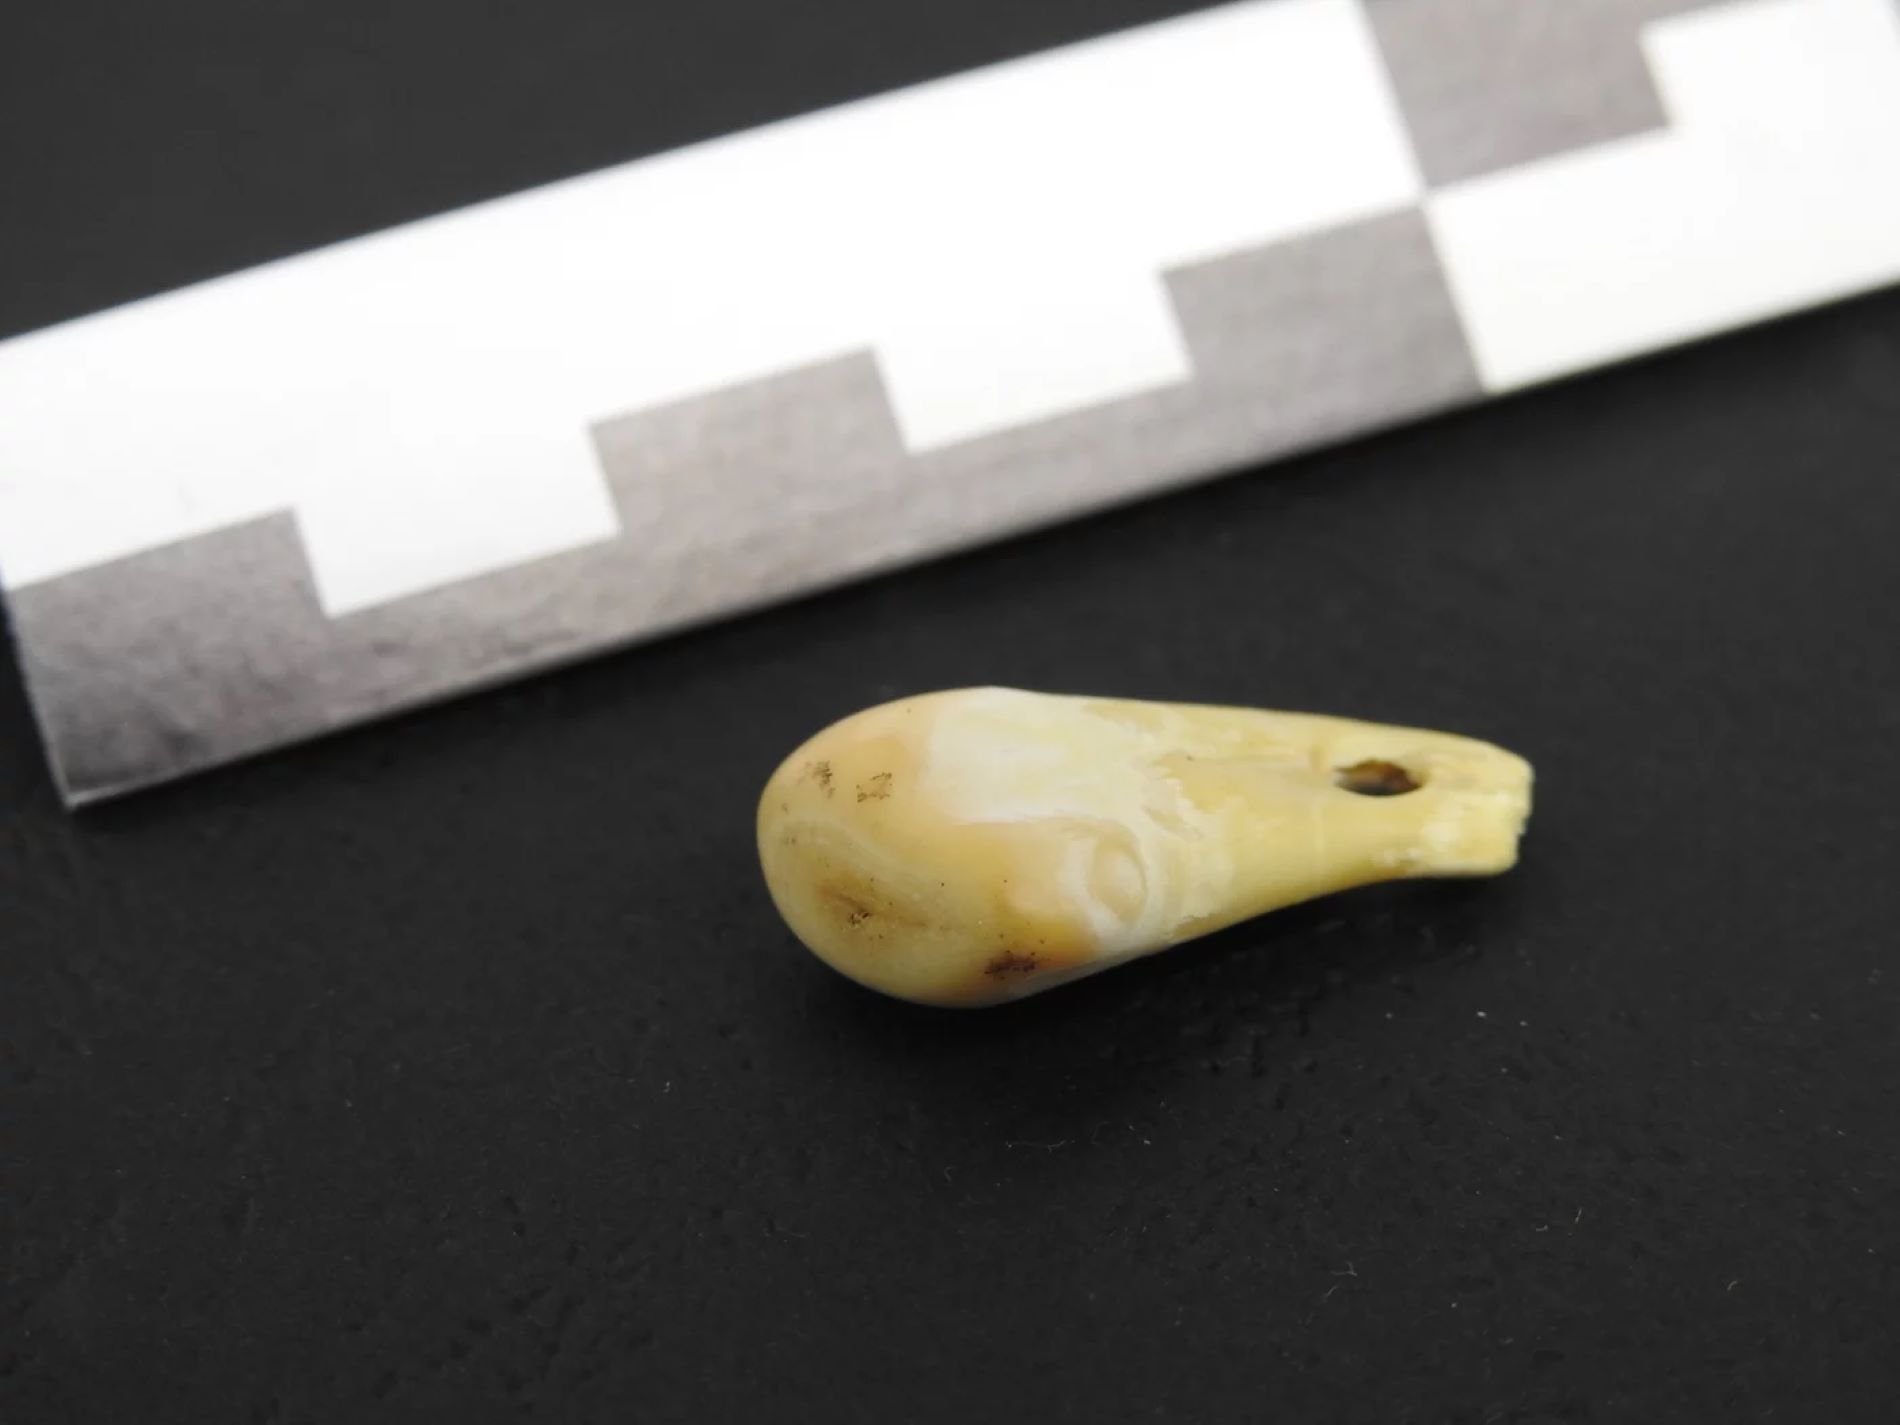 Recuperat l'ADN d'una dona en un collar de fa 20.000 anys: nova tècnica revolucionària